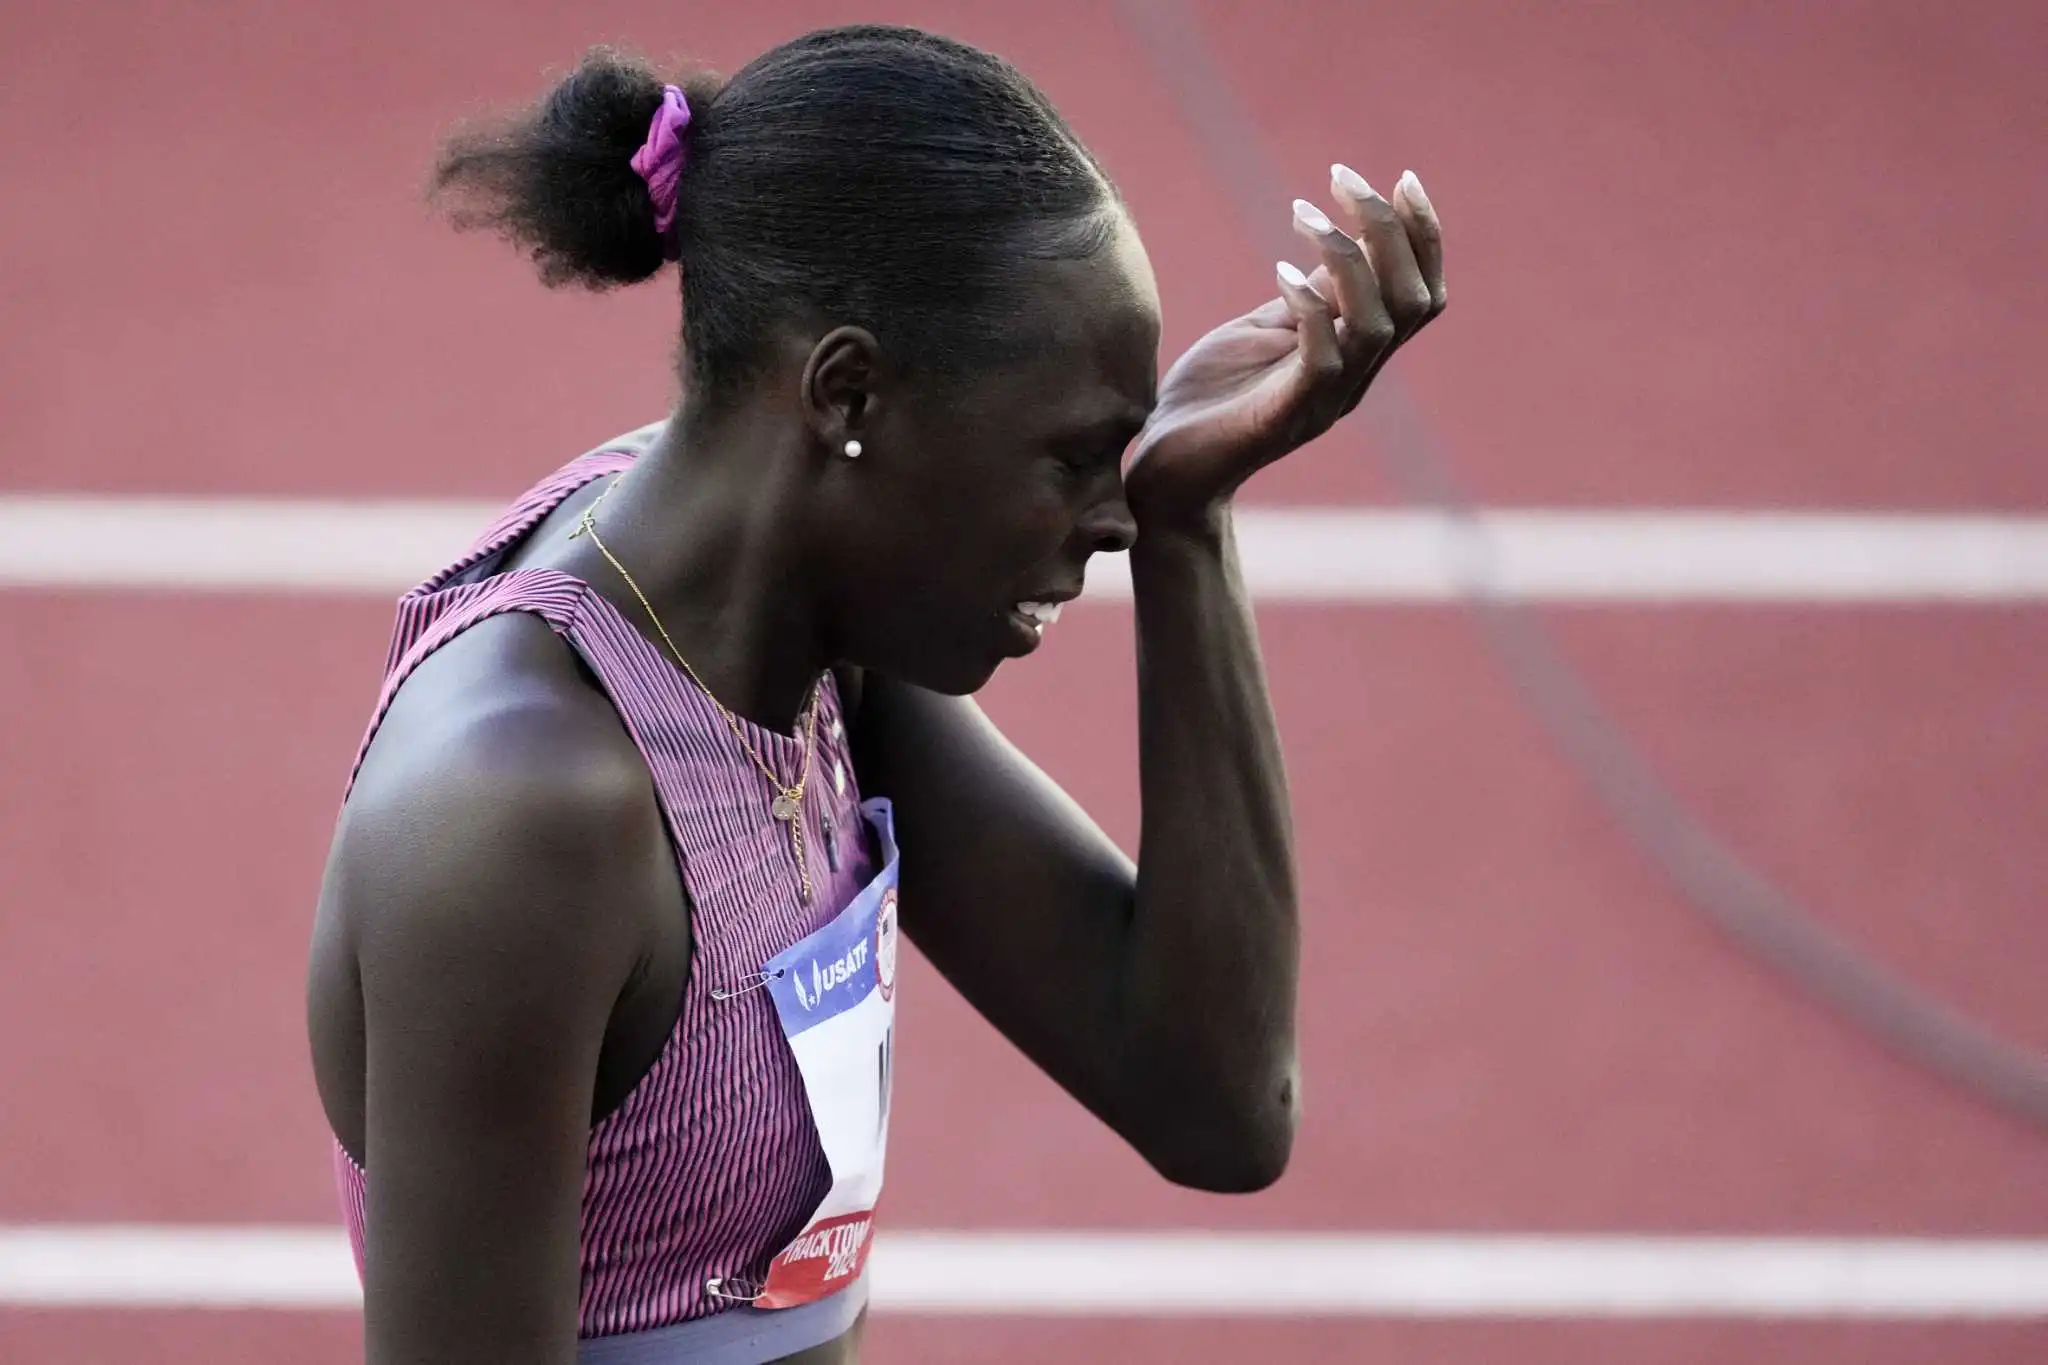 Athing Mu cae en 800 metros y pierde la oportunidad de defender el título olímpico